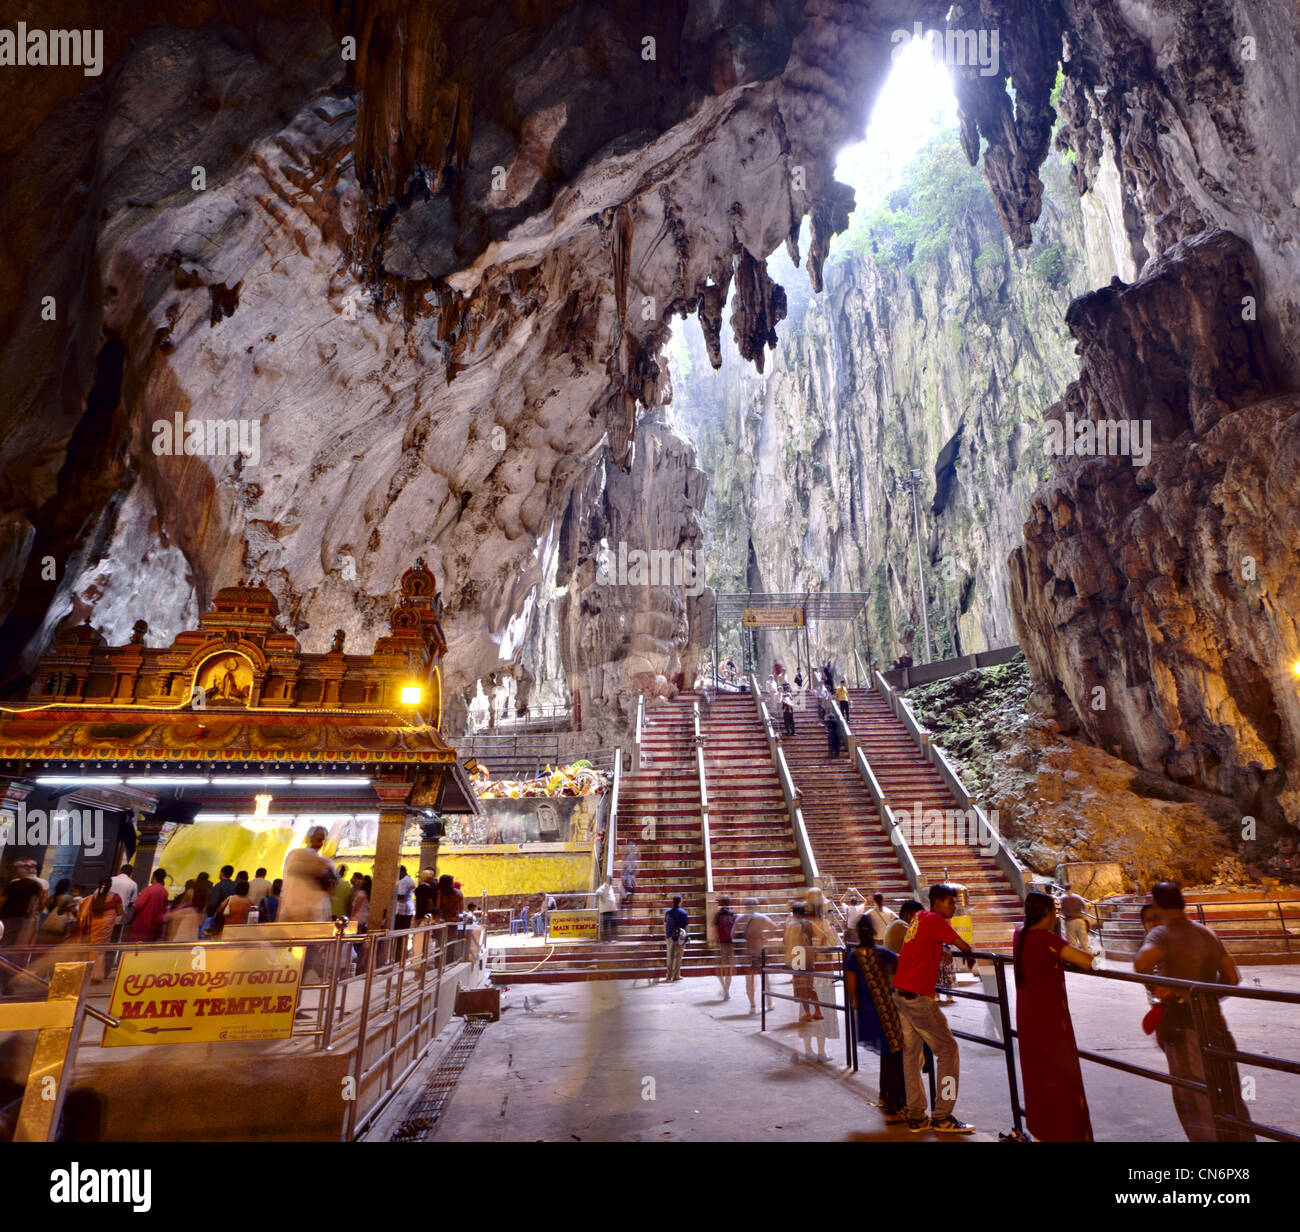 Hindu temple in Batu Caves, Kuala Lumpur Stock Photo